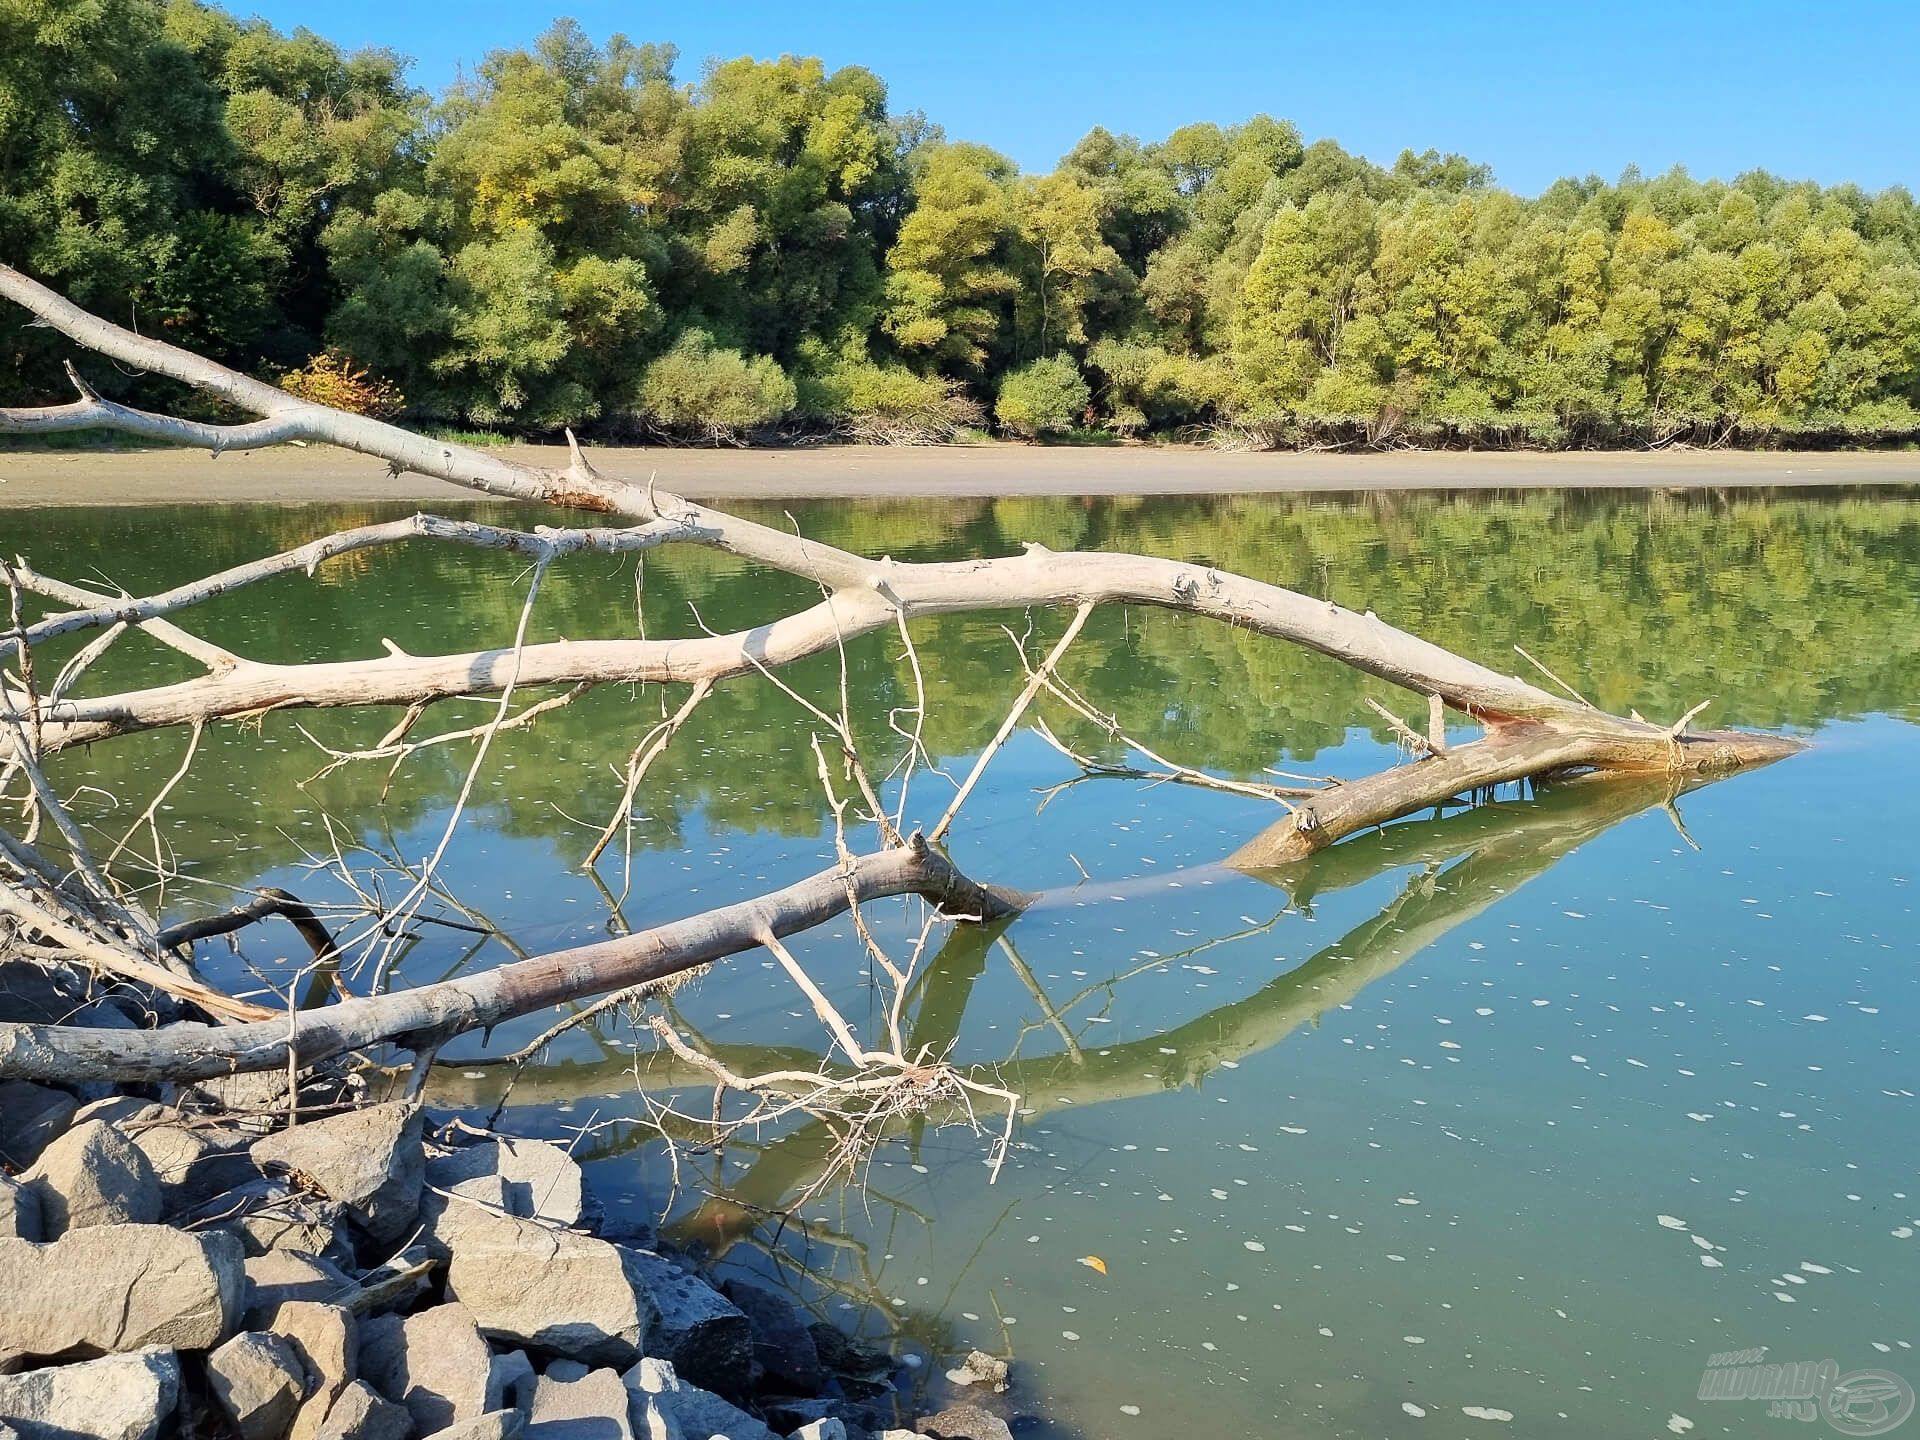 A folyó uszadéka – idővel és magasabb vízállásnál igazán jó haltartó hellyé válhat